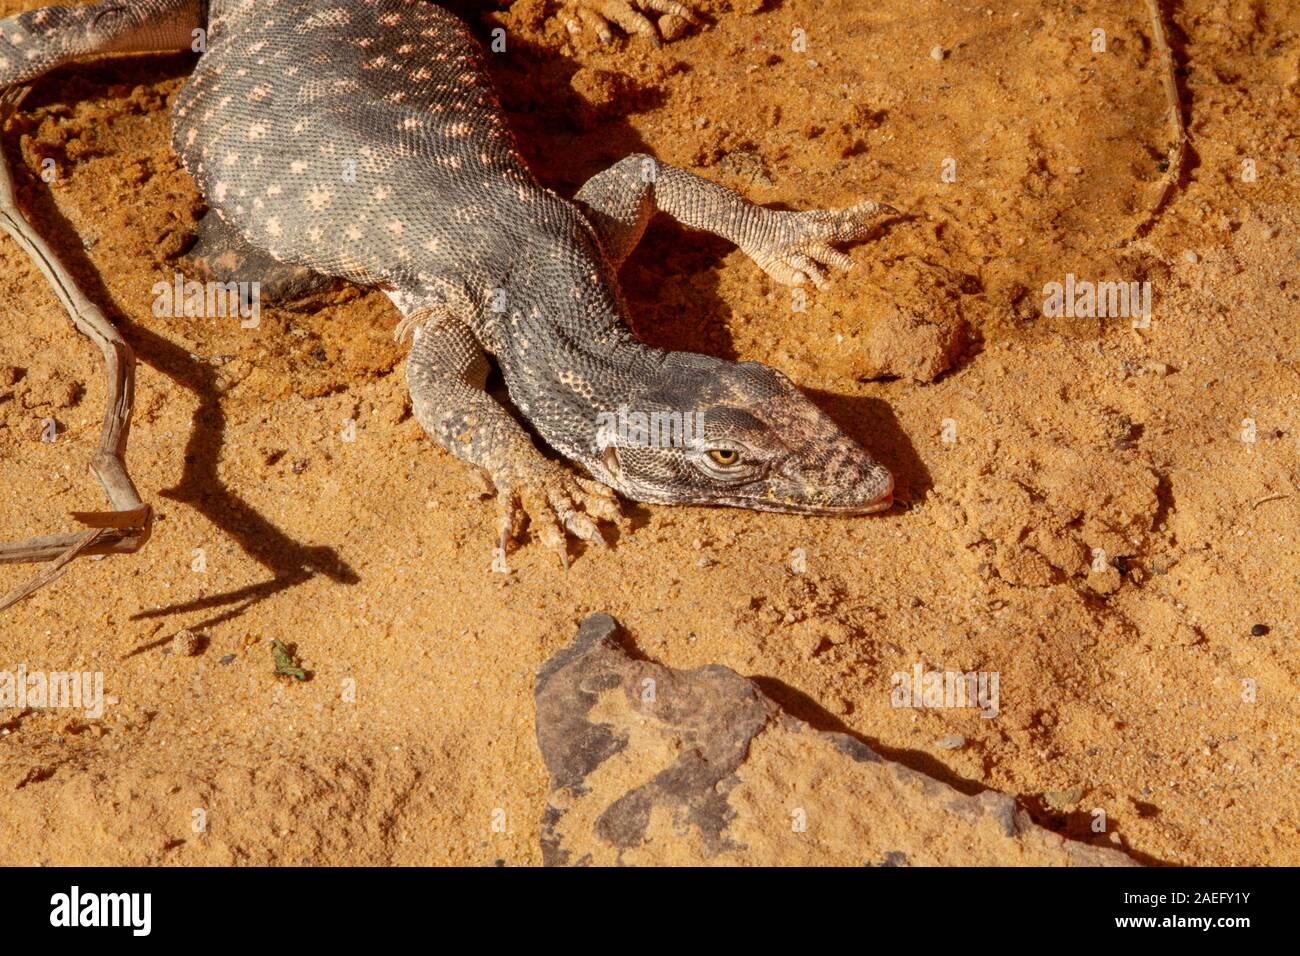 Wüste Monitor (Varanus griseus). Eine Art der Warane der Ordnung Squamata gefunden Leben in Nord Afrika sowie in Zentral- und Südasien. Stockfoto